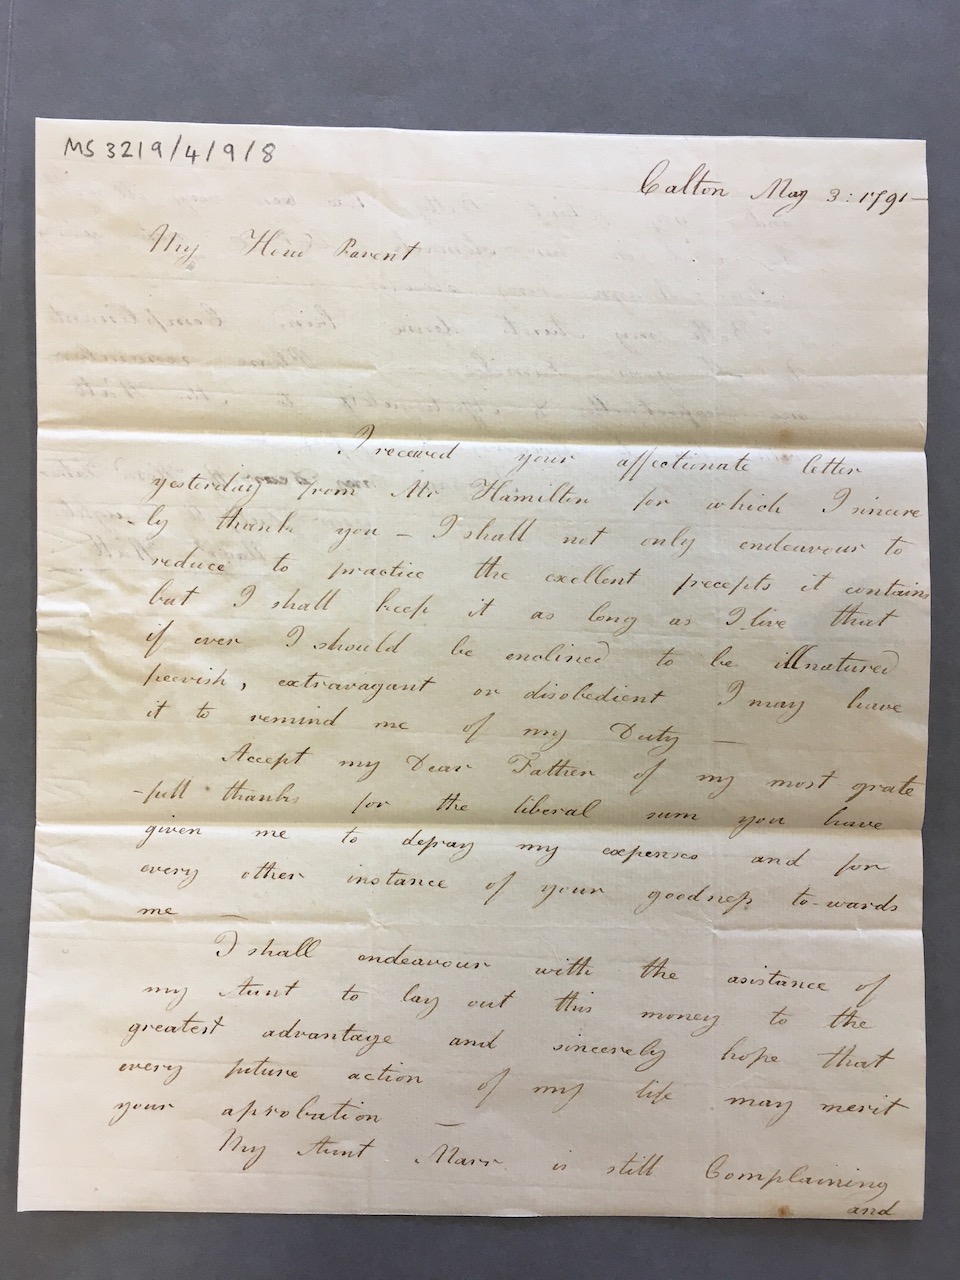 Image #1 of letter: Margaret Watt (II) to James Watt (II), 3 May 1791